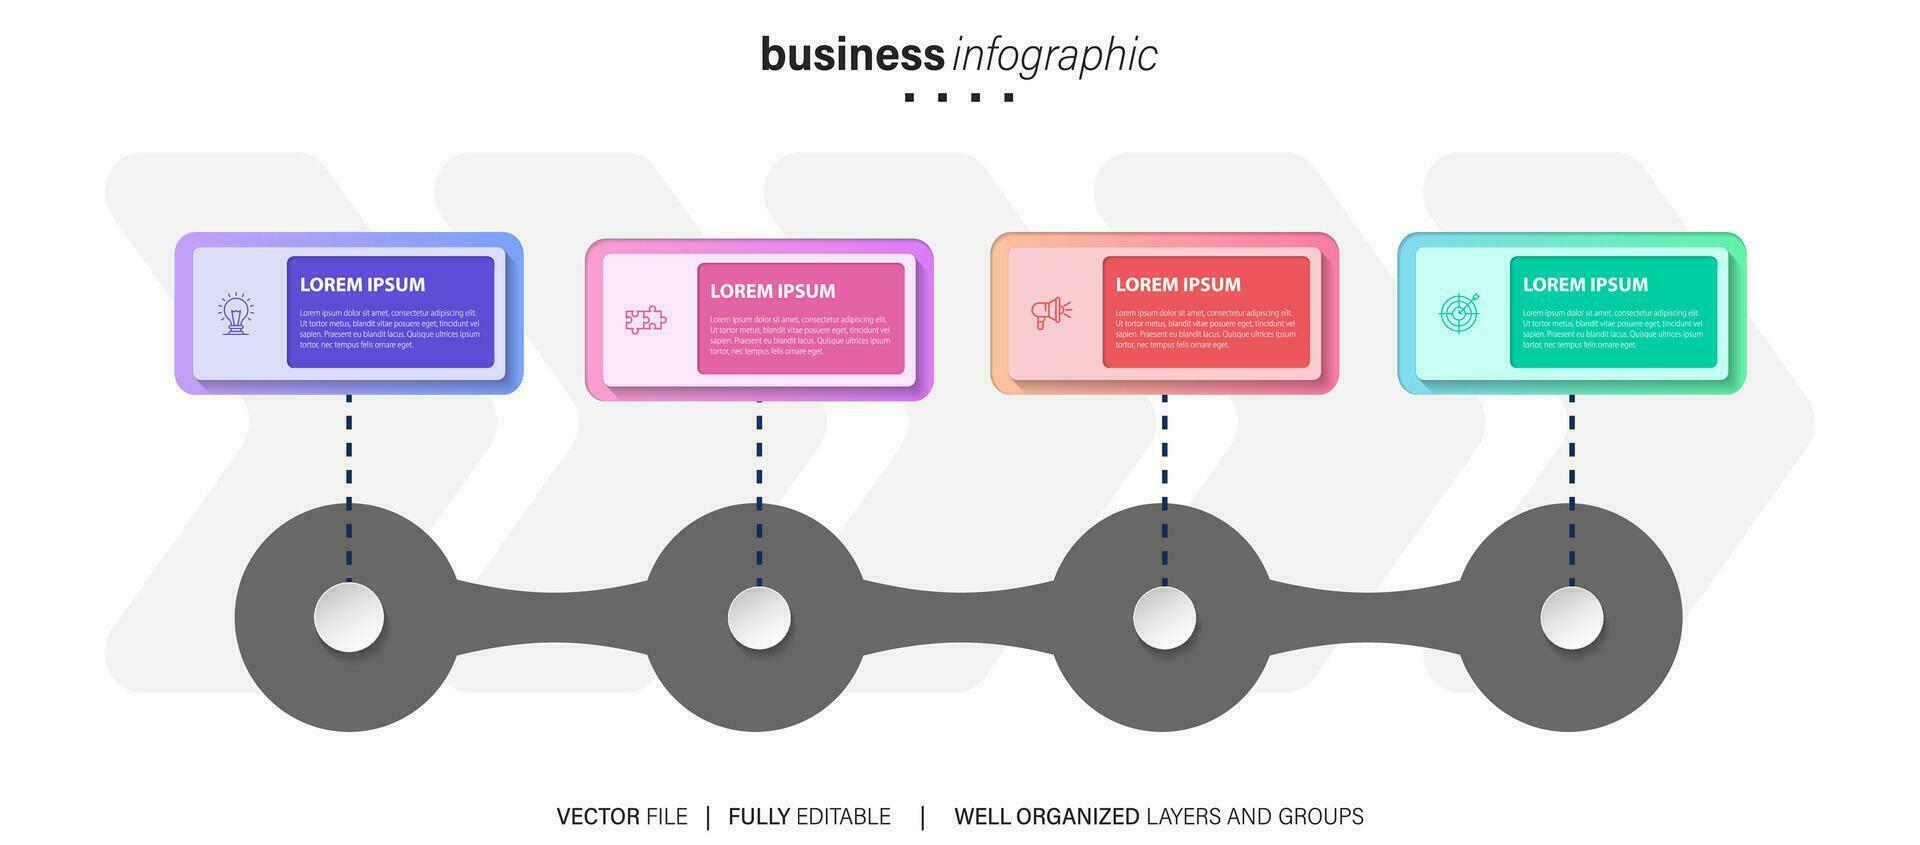 template.timeline de infográficos de negócios com 4 etapas, círculos, opções e ícones de marketing. elementos de infográfico linear do vetor. vetor